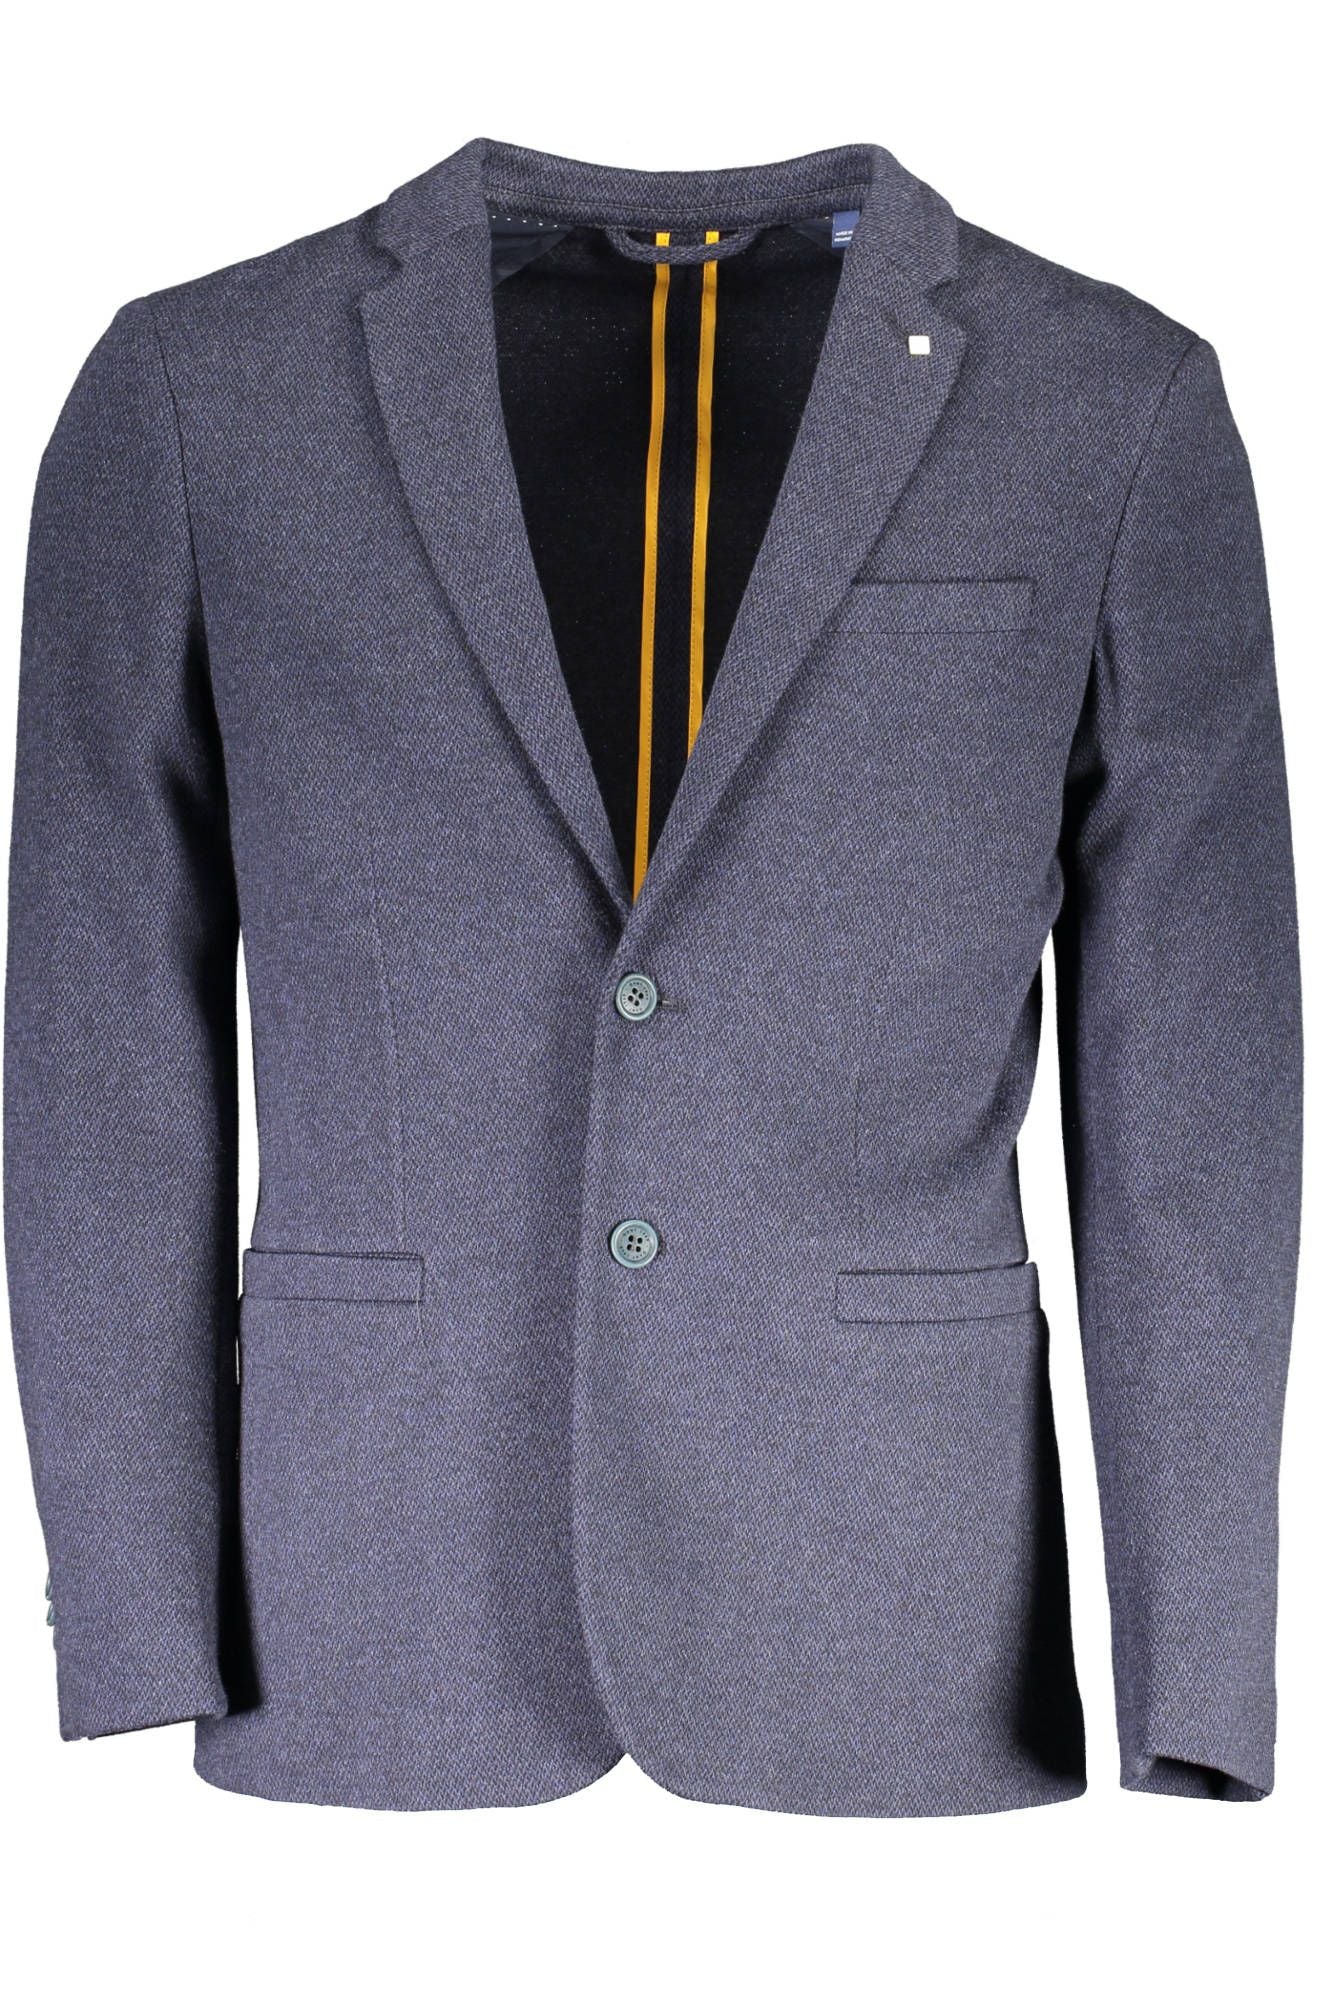 Elegant Blue Classic Long Sleeve Jacket - Divitiae Glamour